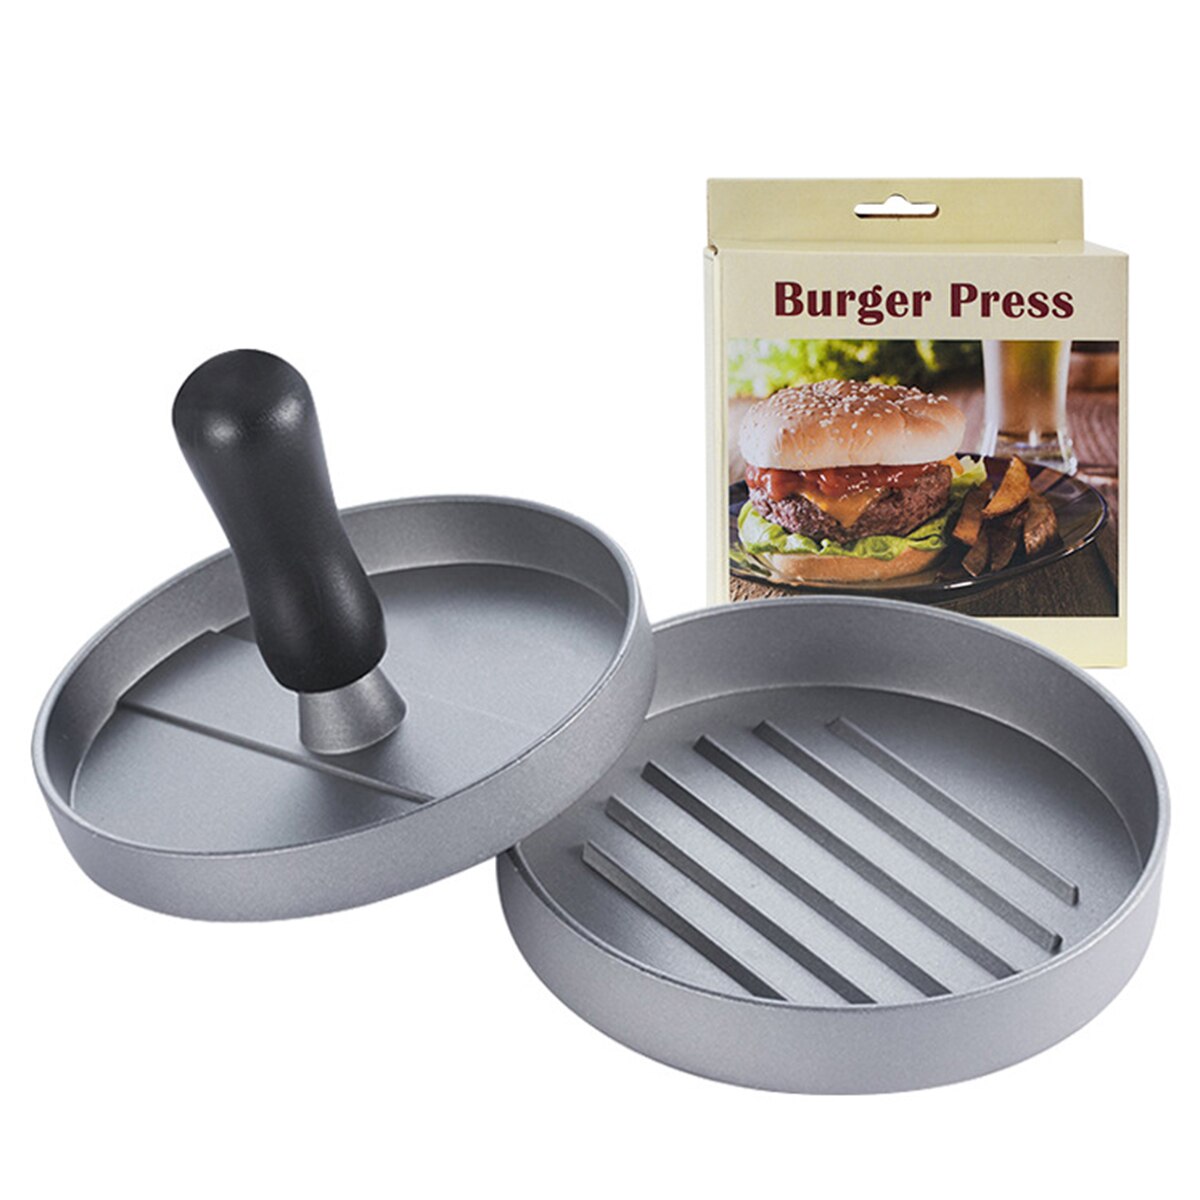 Rund form hamburger presse aluminiumslegering hamburger kød oksekød grill burger presse patty maker skimmel køkken kød værktøjer